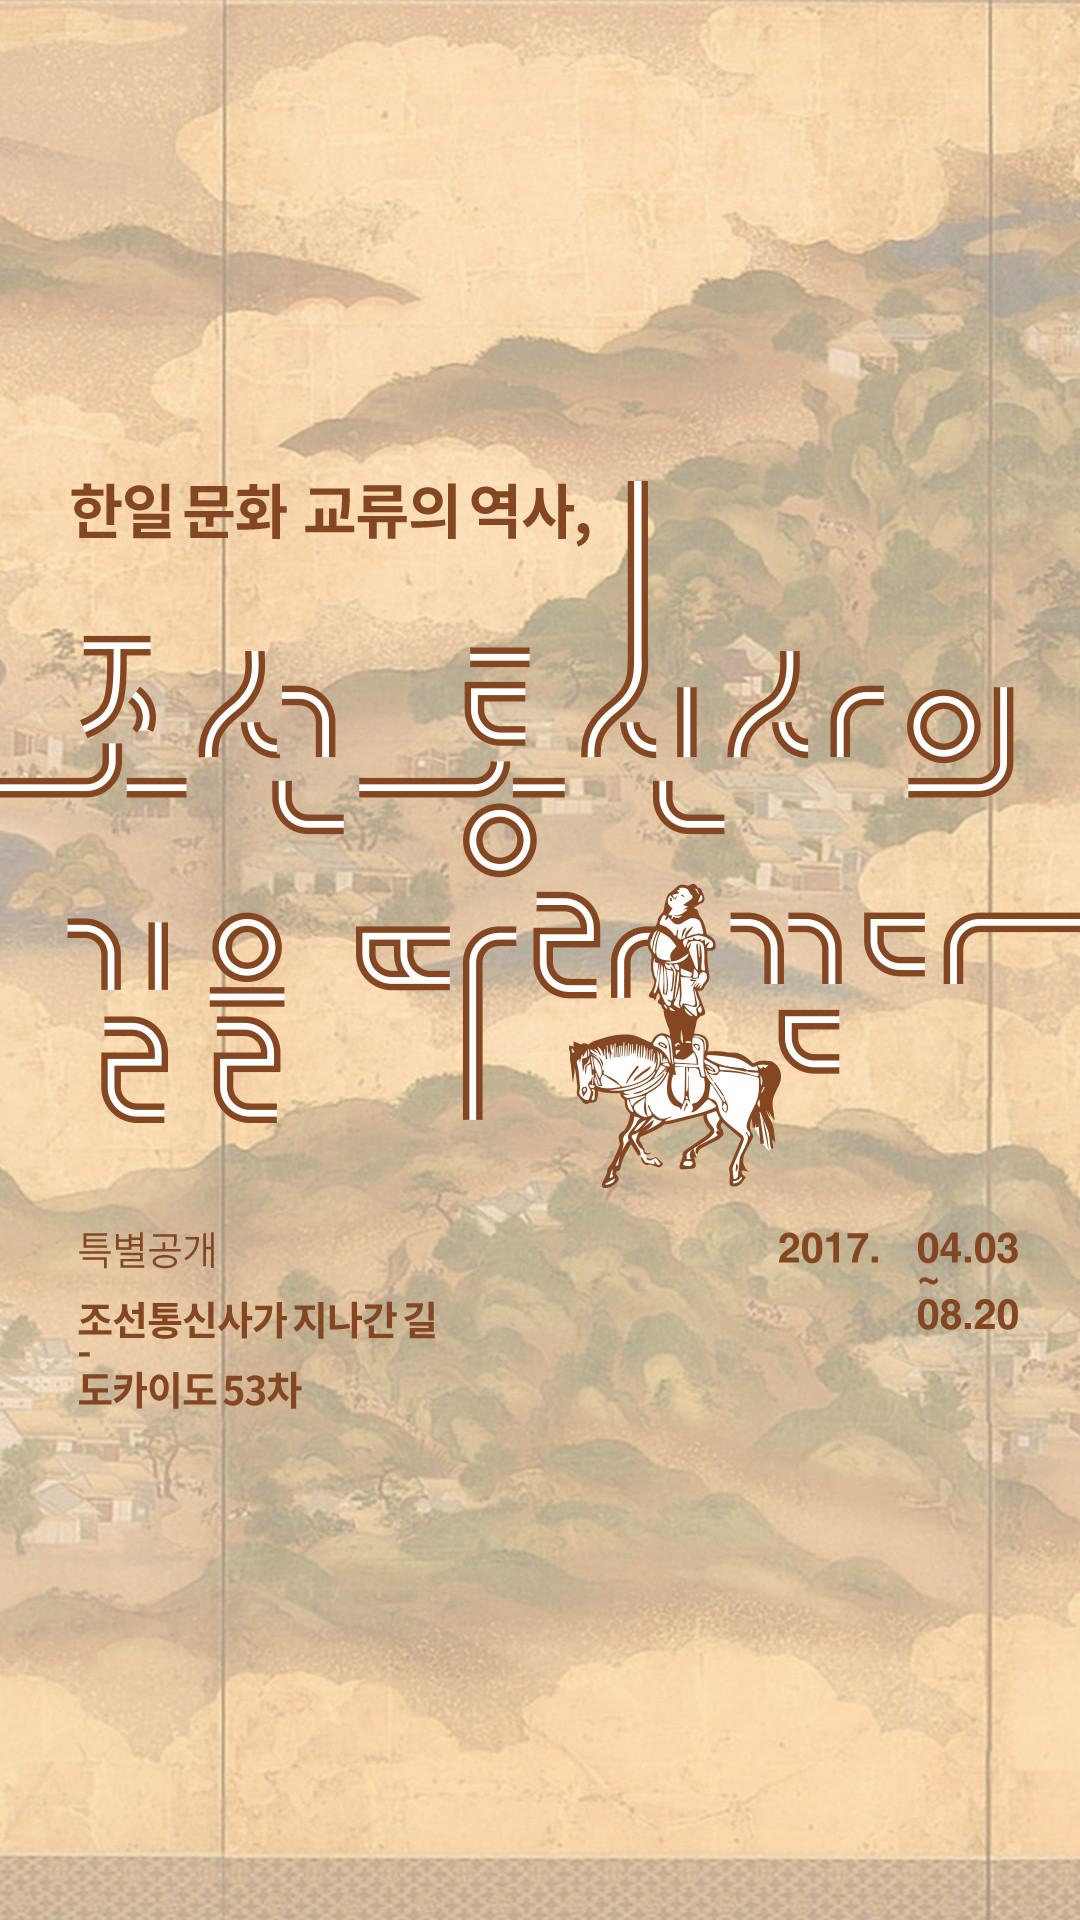 한일 문화 교류의 역사, 조선 통신사의 길을 따라 걷다. 특별공개. 2017년 4월 3일부터 8월 20일까지